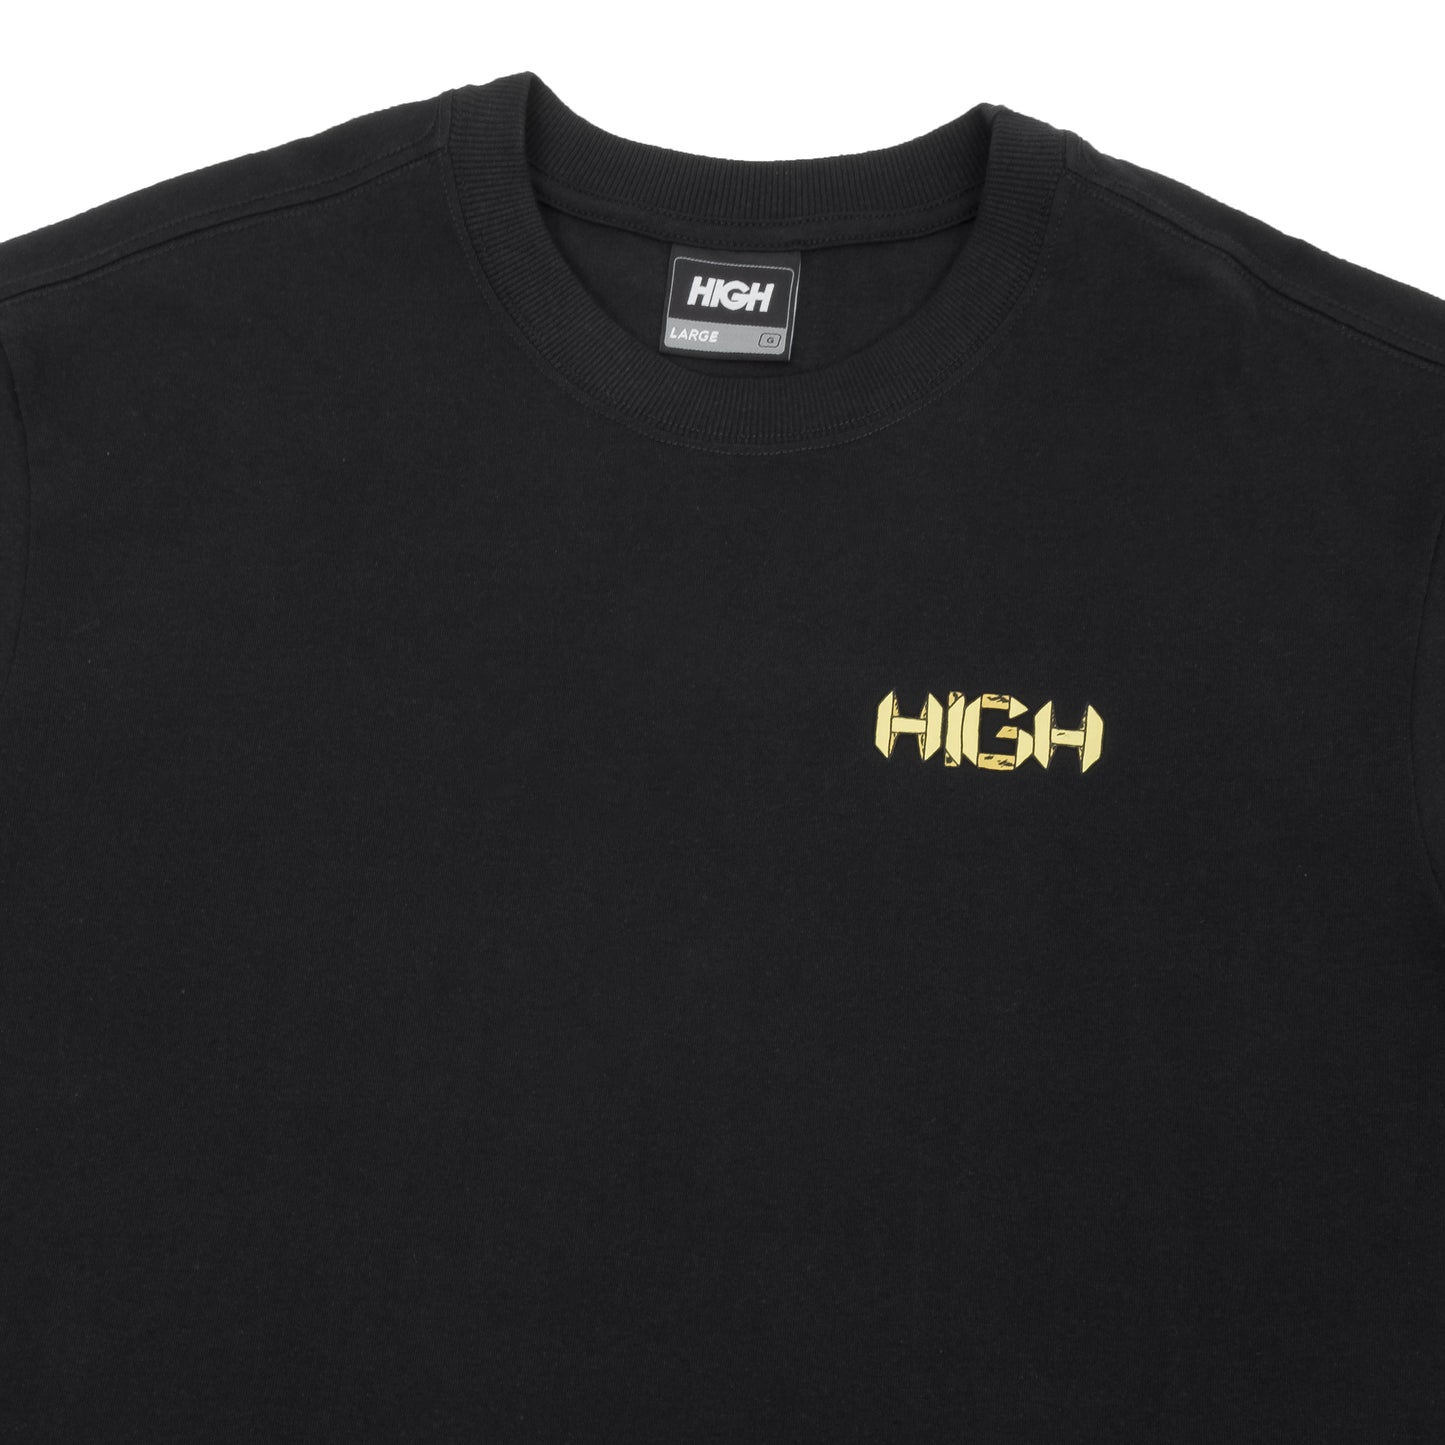 HIGH - Camiseta Origami "Black"